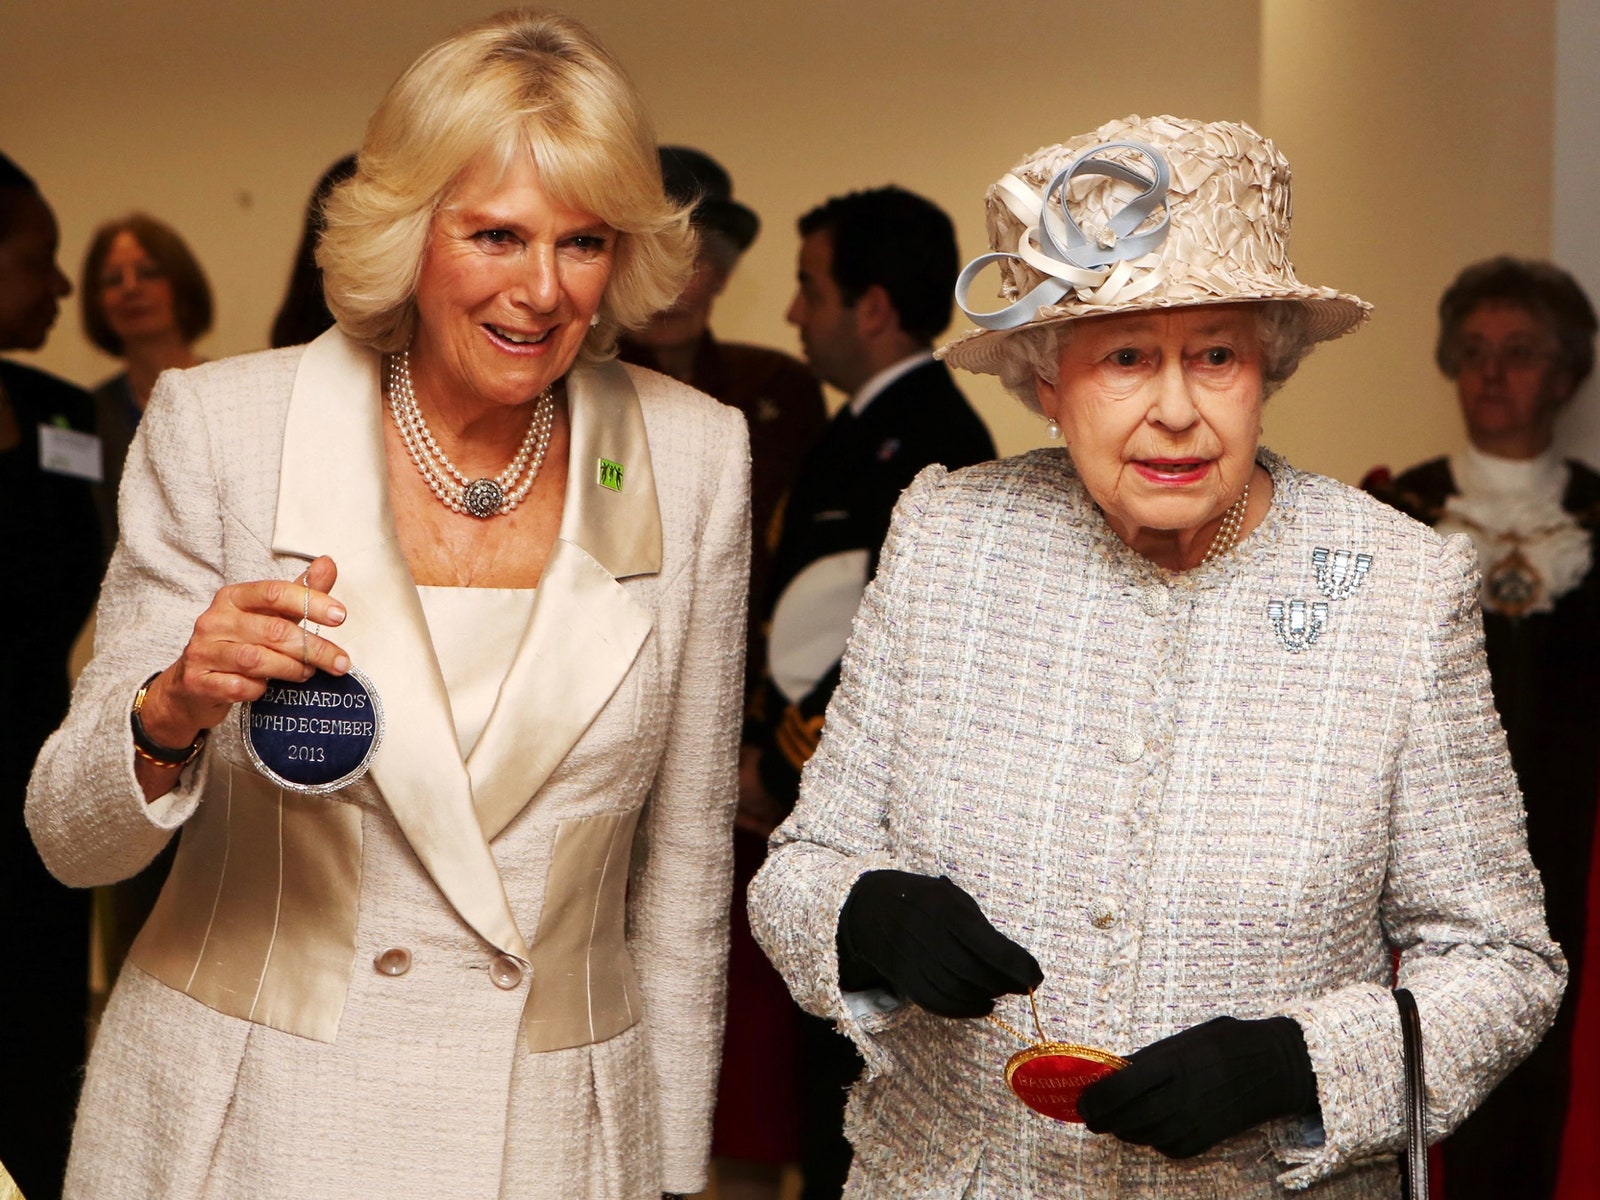 Por dictamen de Isabel II, Camilla Parker Bowles será la nueva reina consorte de Inglaterra